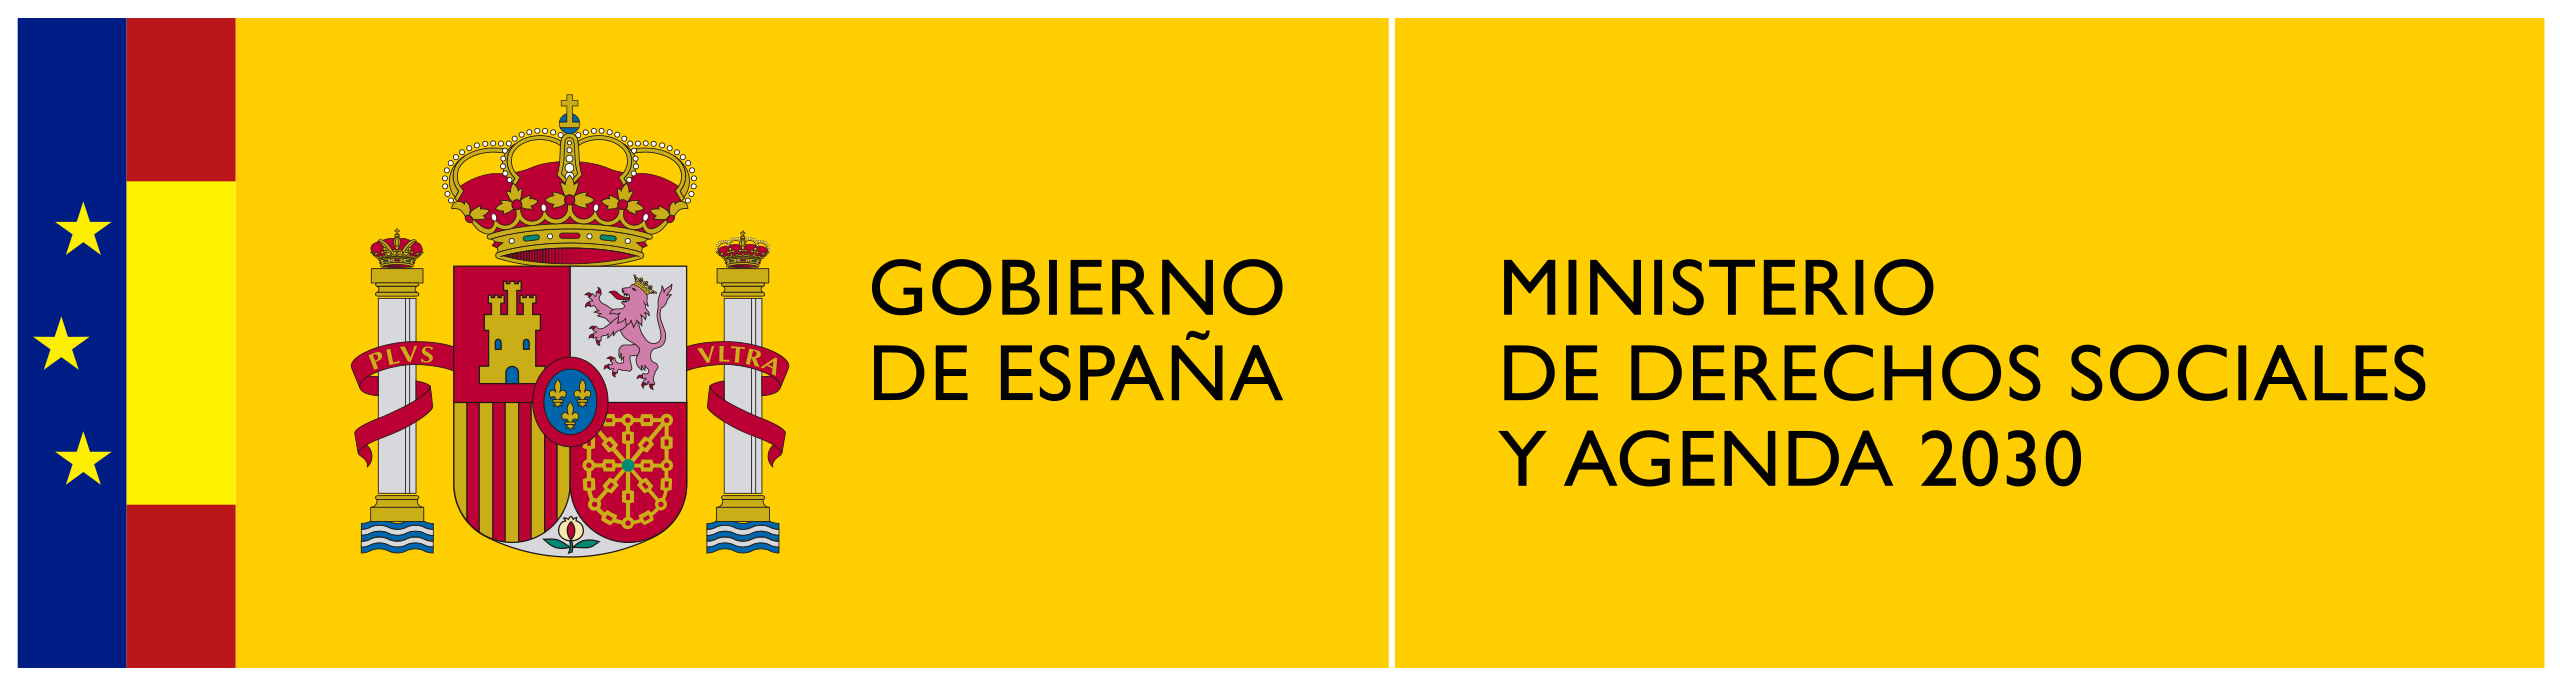 Logotipo del ministerio de Derechos Sociales y Agenda 2030 - Gobierno de España